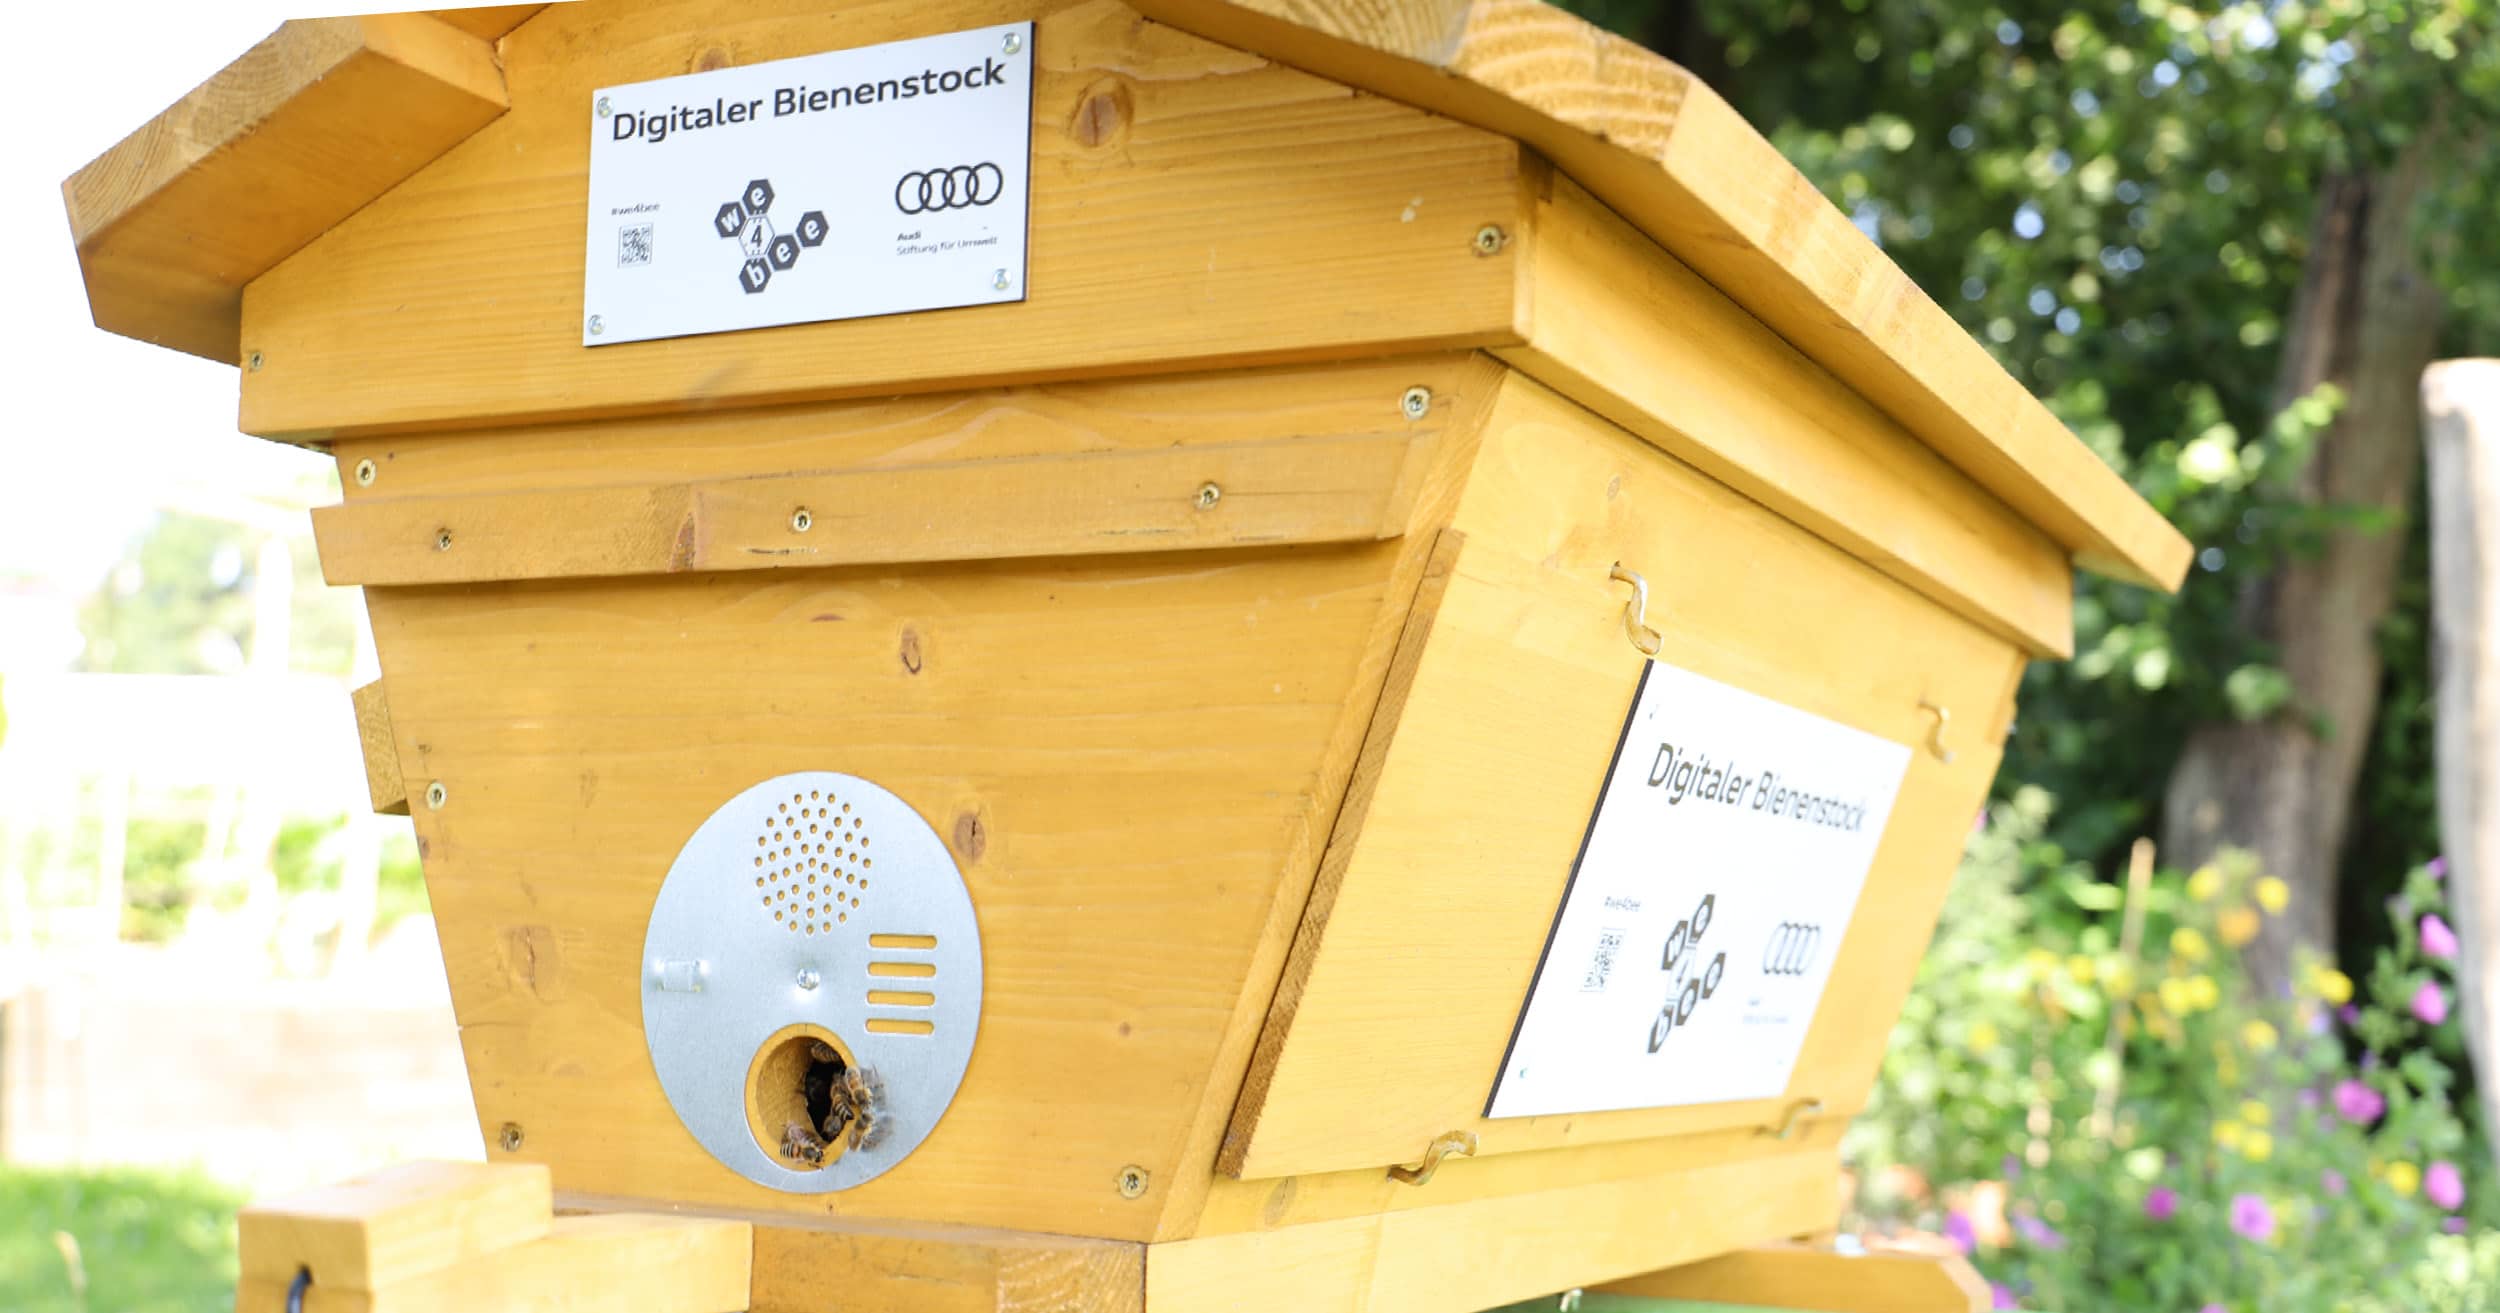 Digitaler Bienenstock - Die fleißigen Bienchen sind eingezogen 🐝 🐝 ...